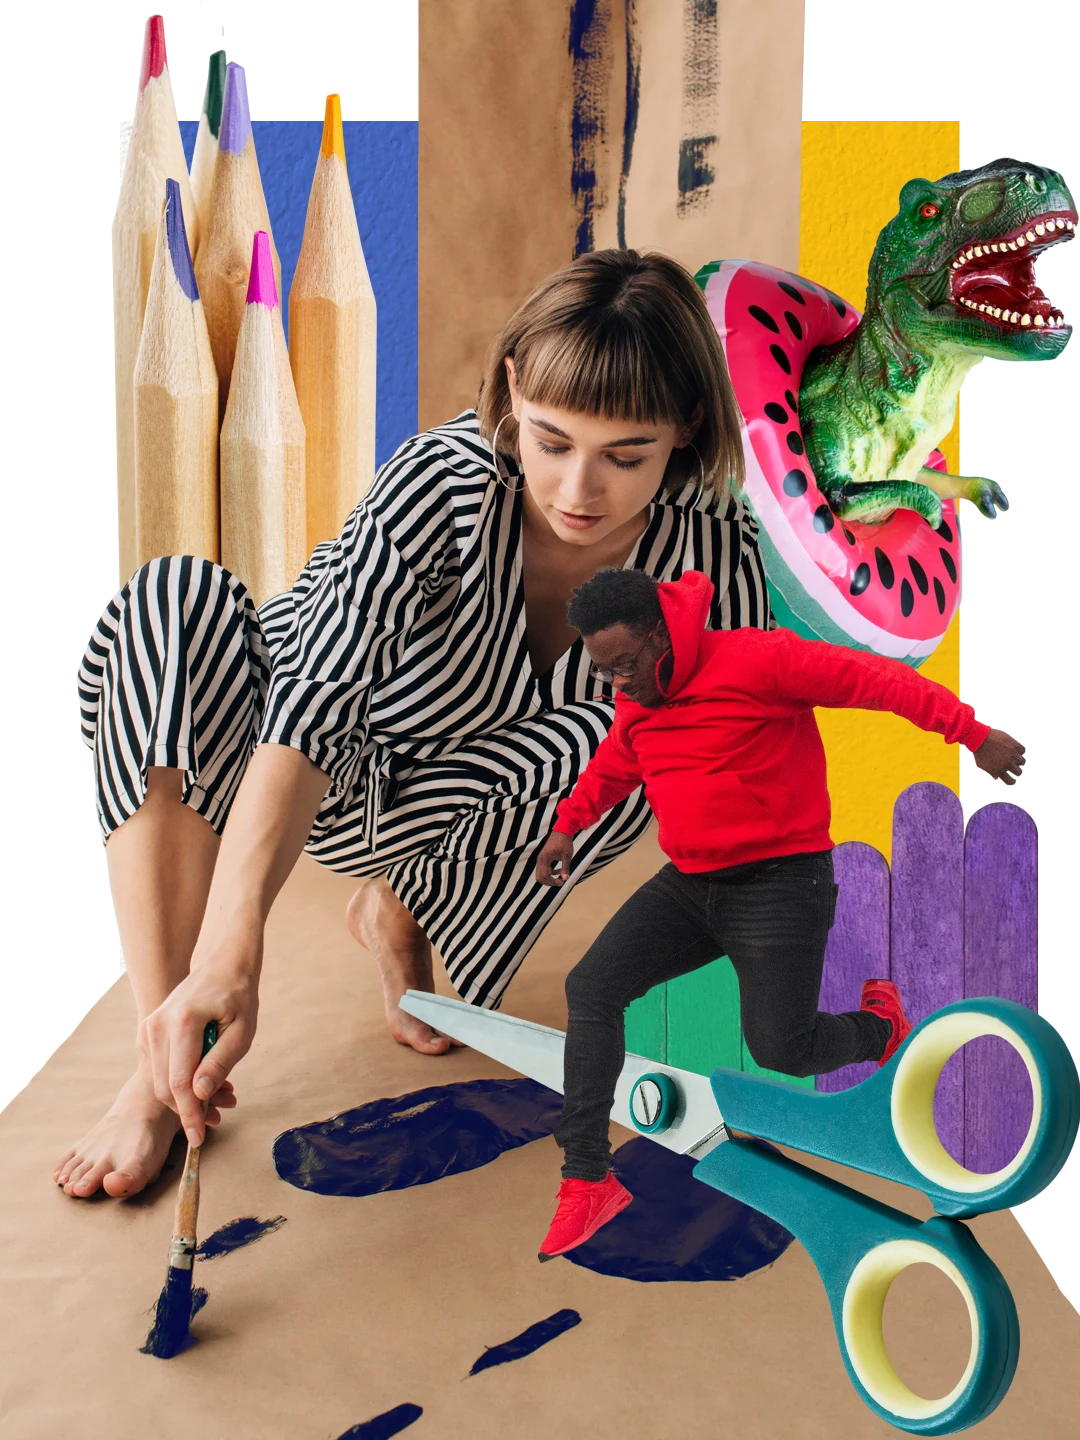 Collage de manualidades. Un tiranosaurio rex de juguete con un flotador de sandía. En el centro, una mujer de piel clara pintando el piso. A la derecha, un hombre de piel oscura saltando sobre tijeras. Grandes lápices, tijeras y papel adhesivo de colores.
